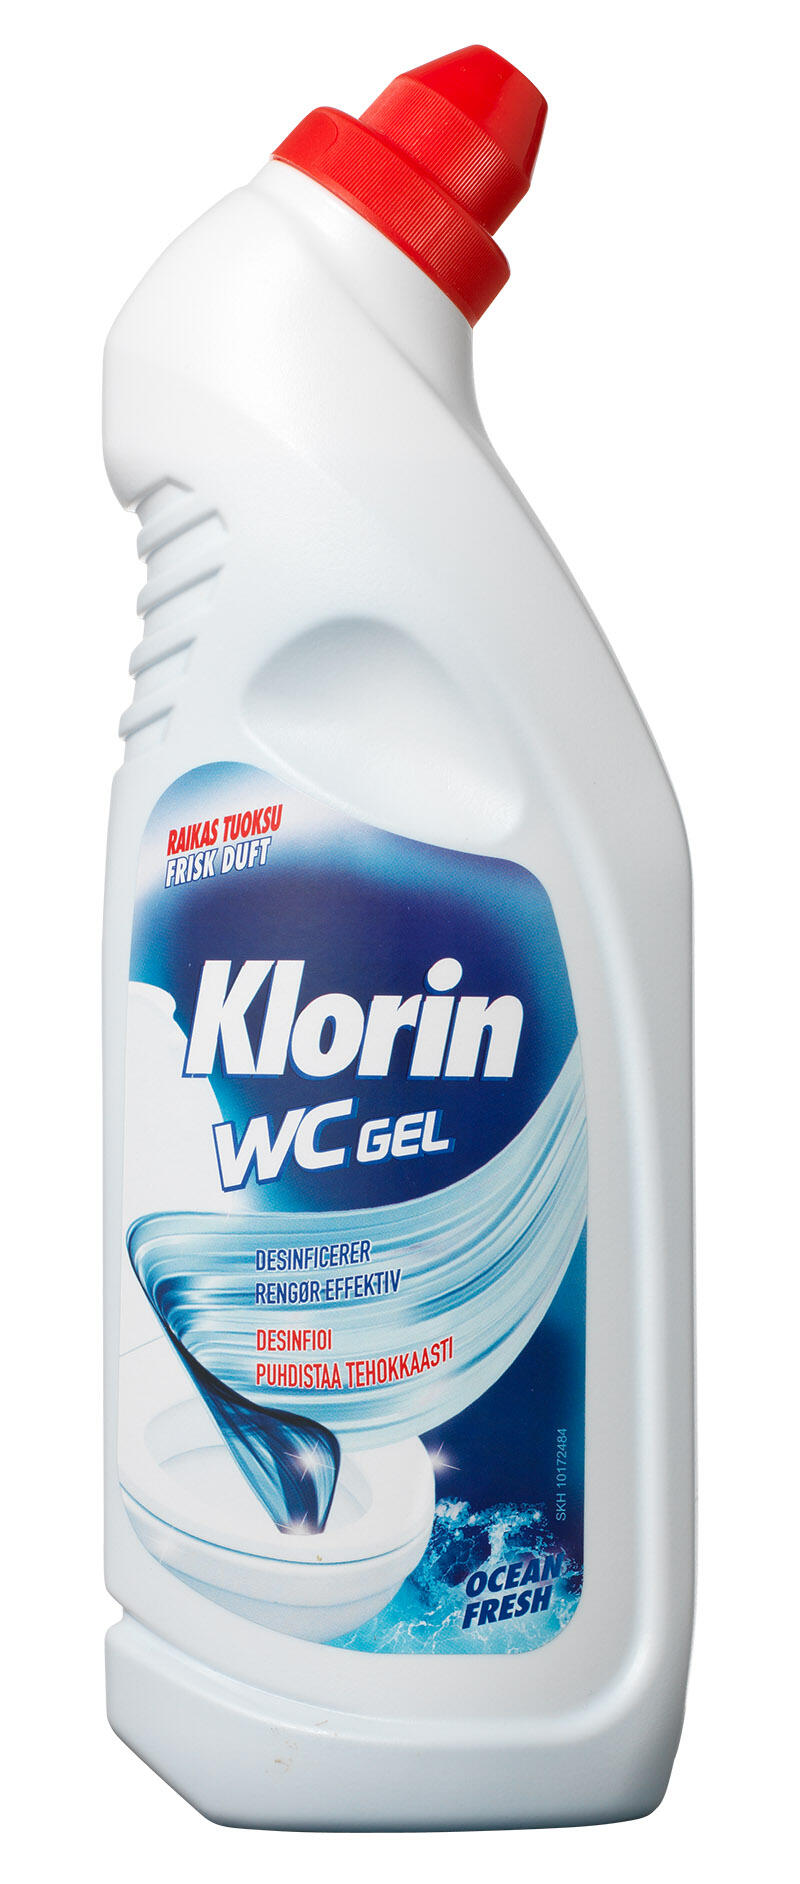 WC gel ocean fresh Klorin